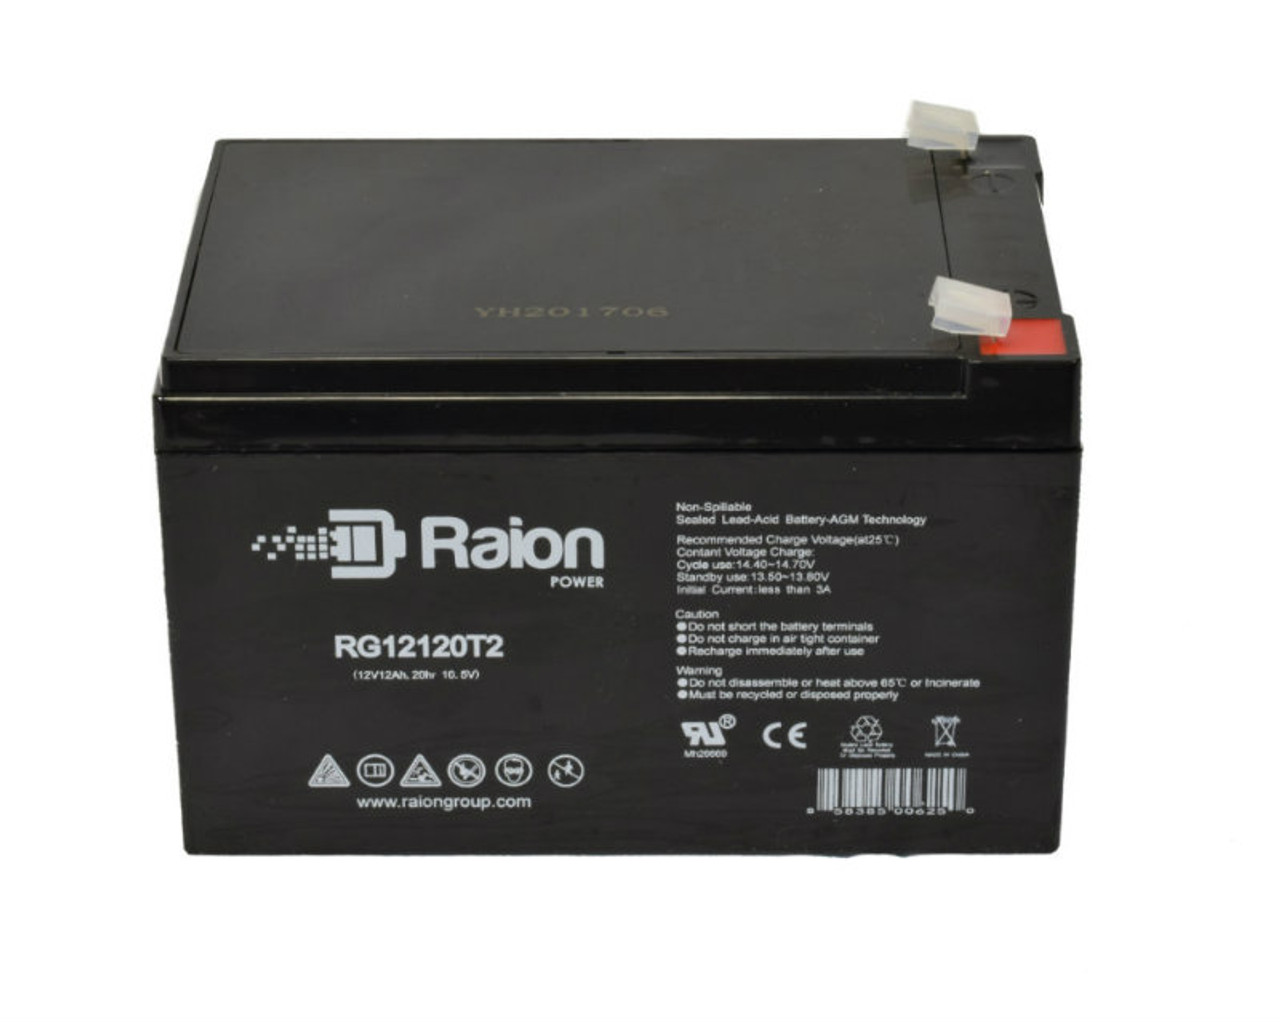 Raion Power RG12120T2 SLA Battery for Precor EFX542i (Ver.B)